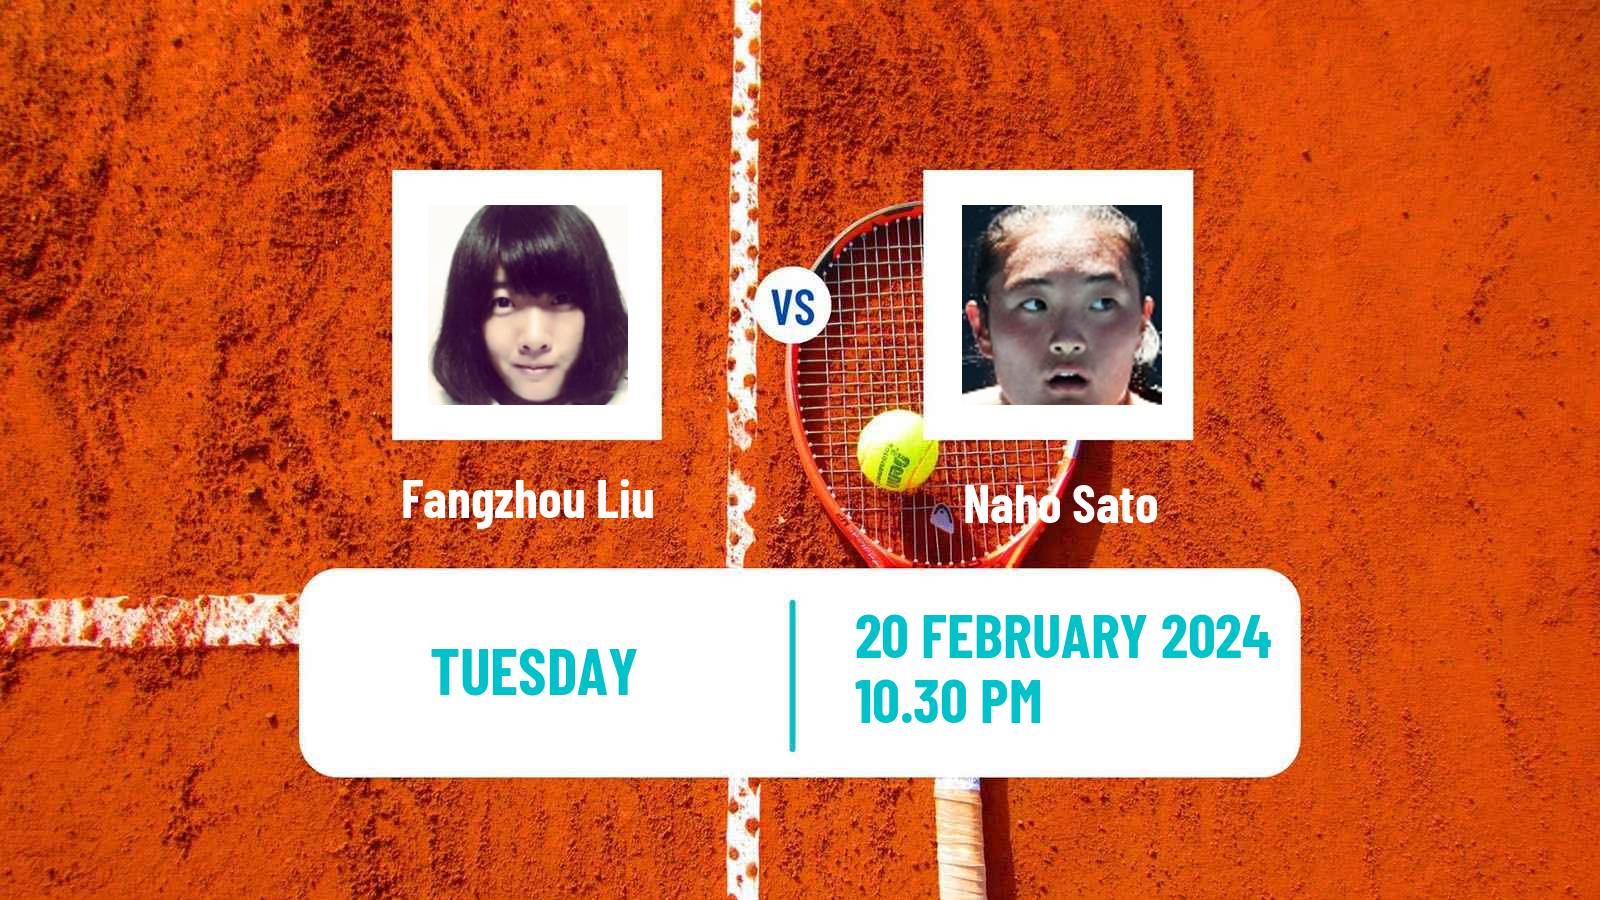 Tennis ITF W35 Traralgon Women Fangzhou Liu - Naho Sato